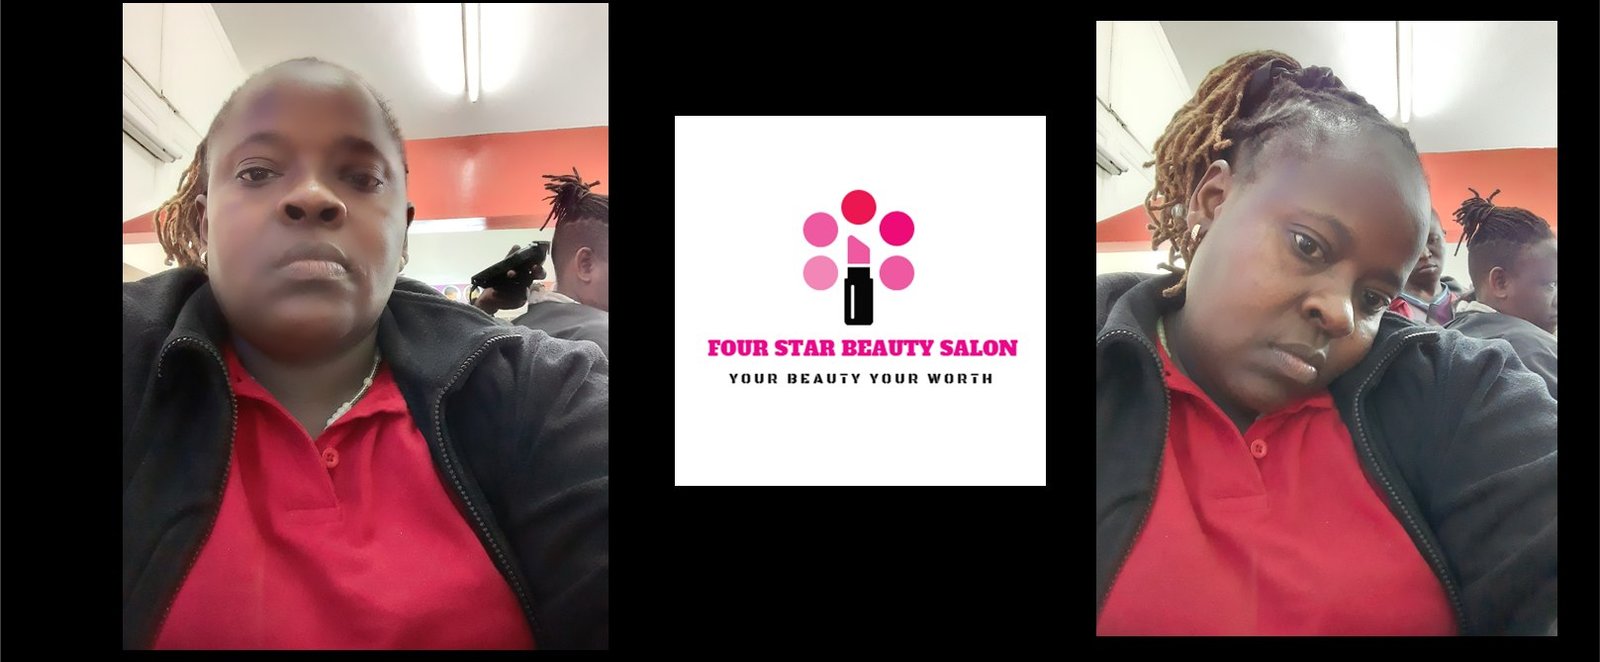 Four Star Beauty Salon